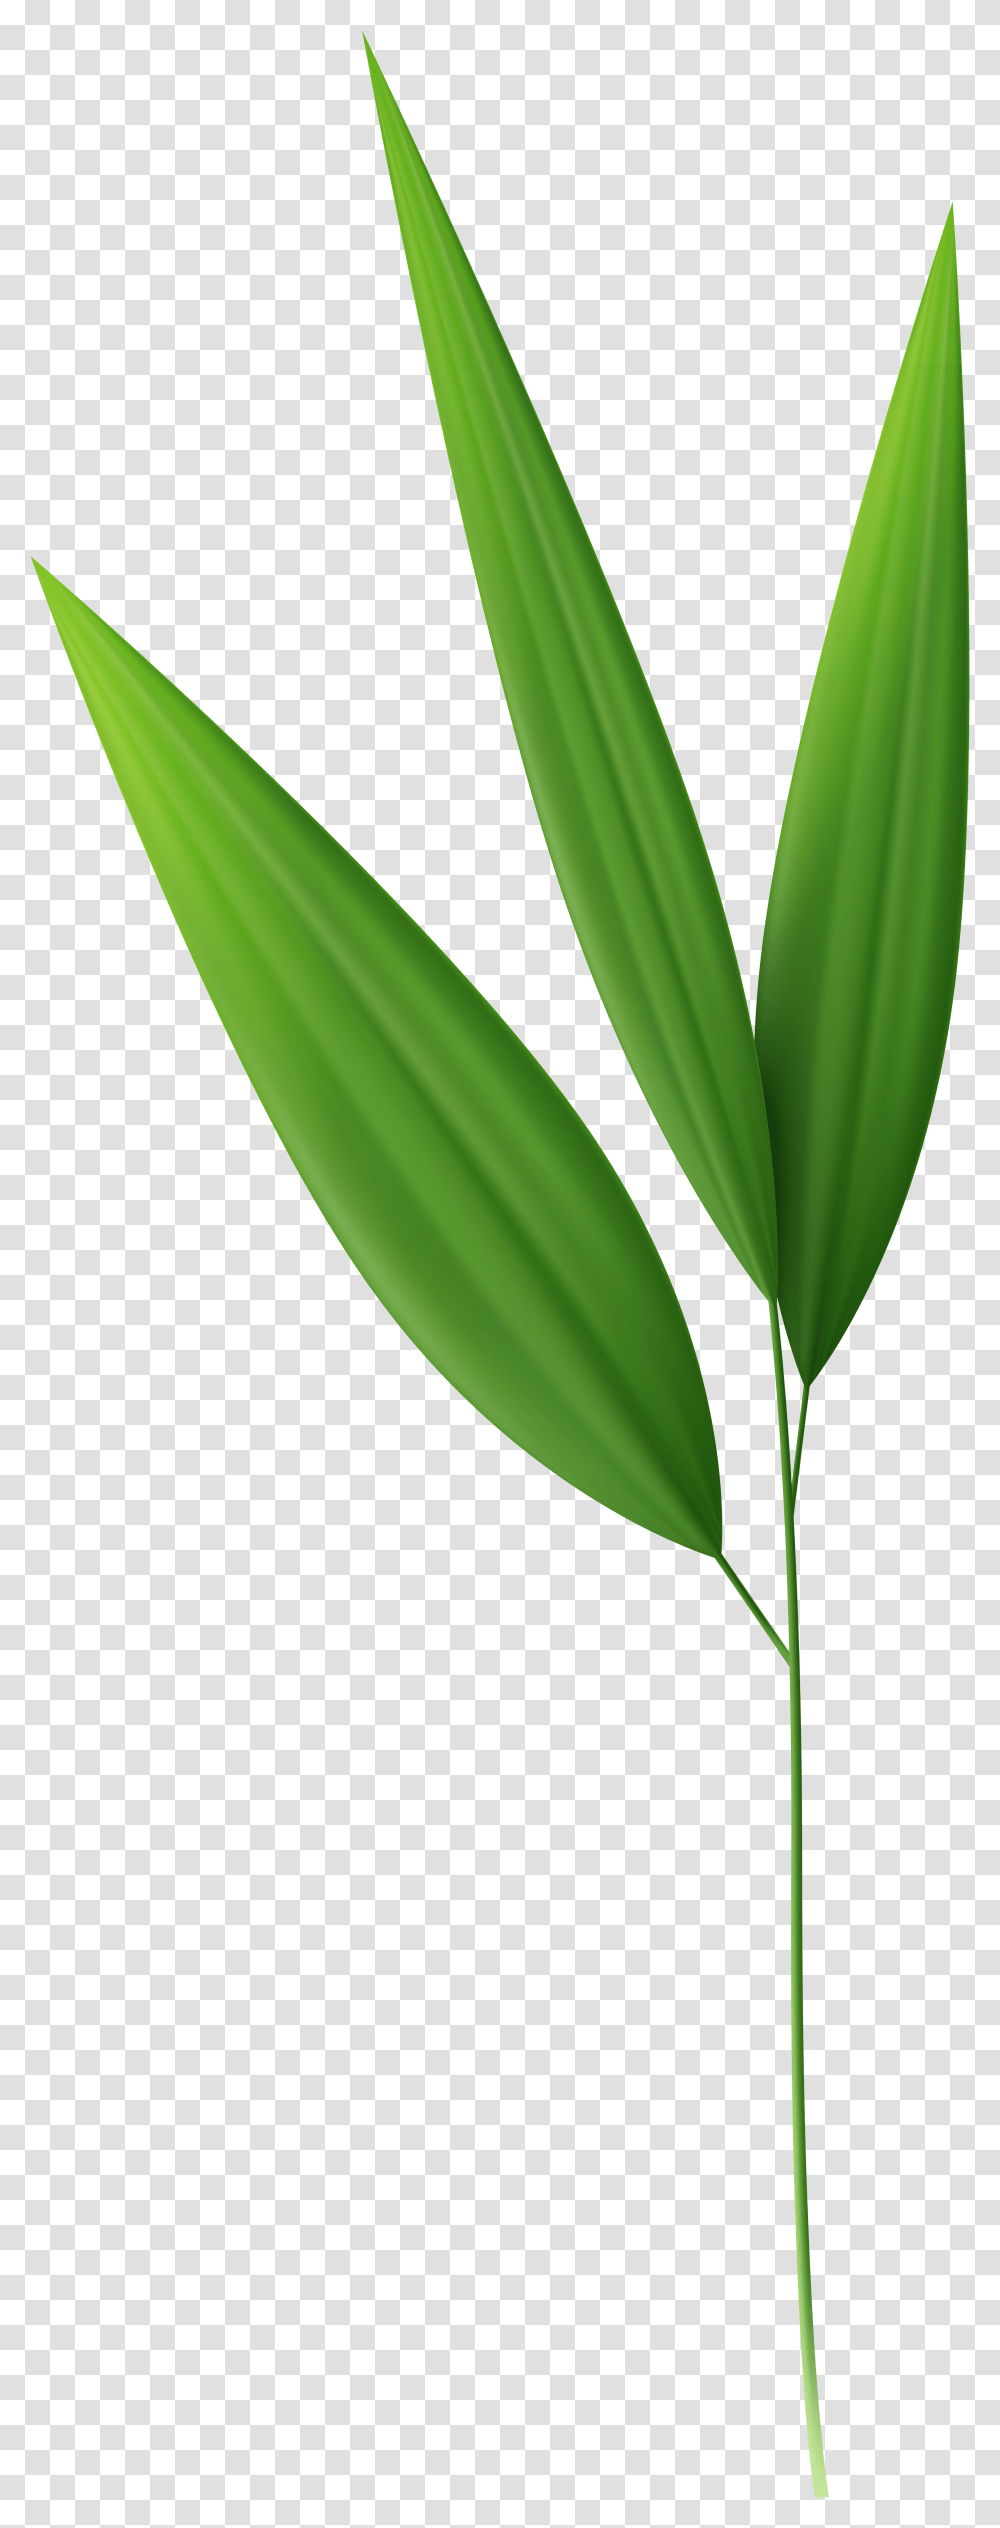 Bamboo Leaves Background, Leaf, Plant, Flower, Blossom Transparent Png